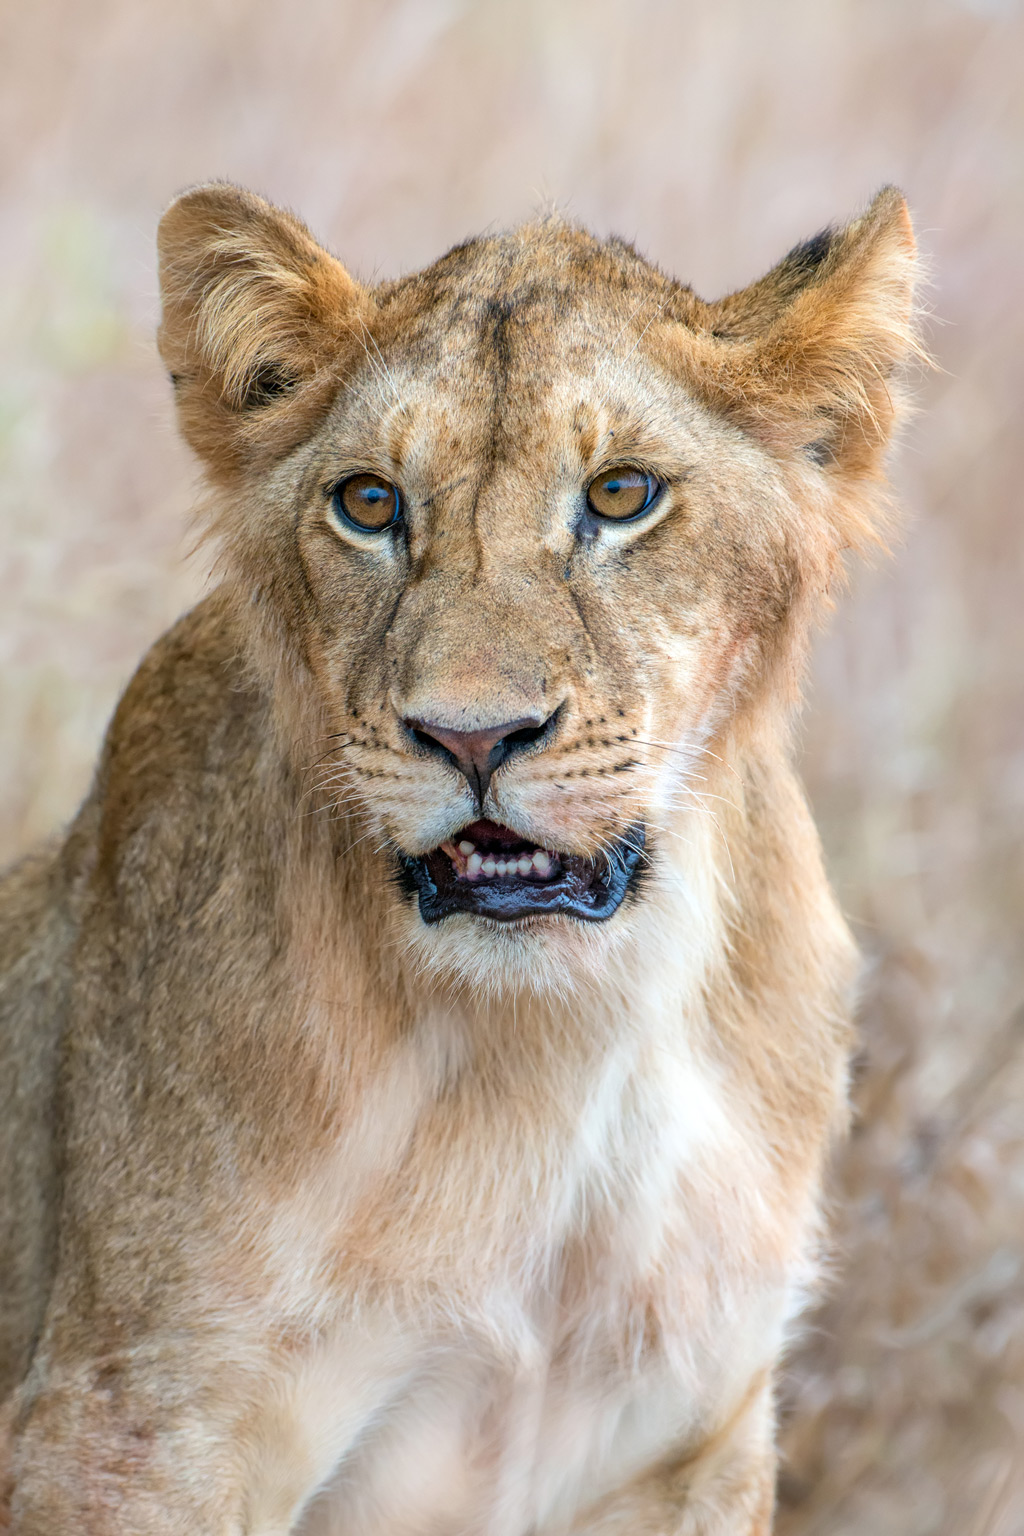 Baby lion portrait